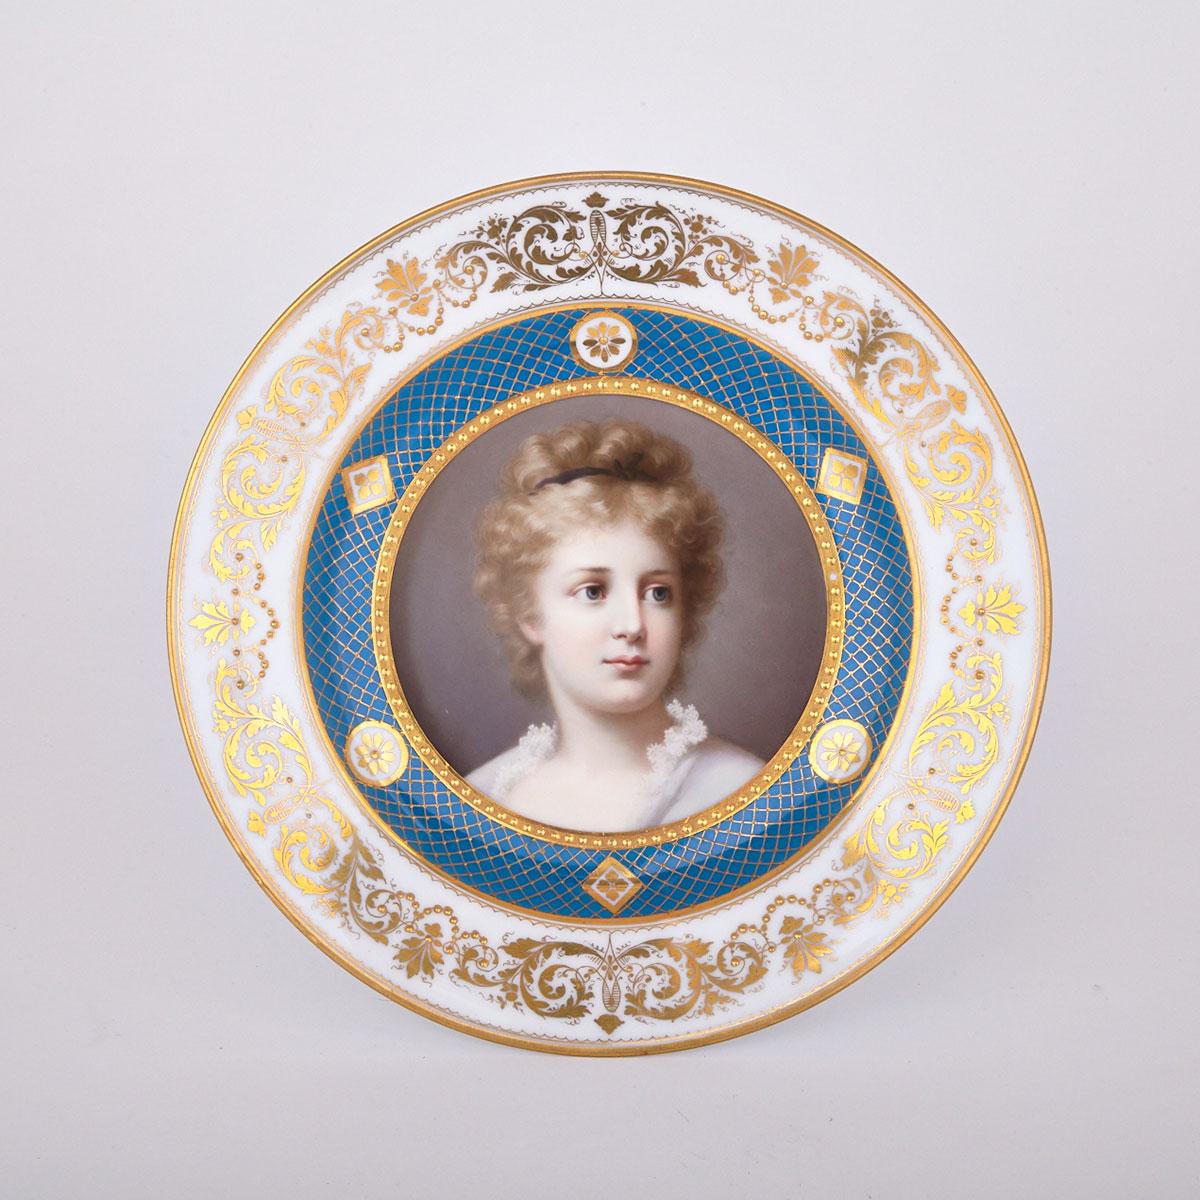 ‘Vienna’ Portrait Cabinet Plate, ‘Elsa’, c.1900